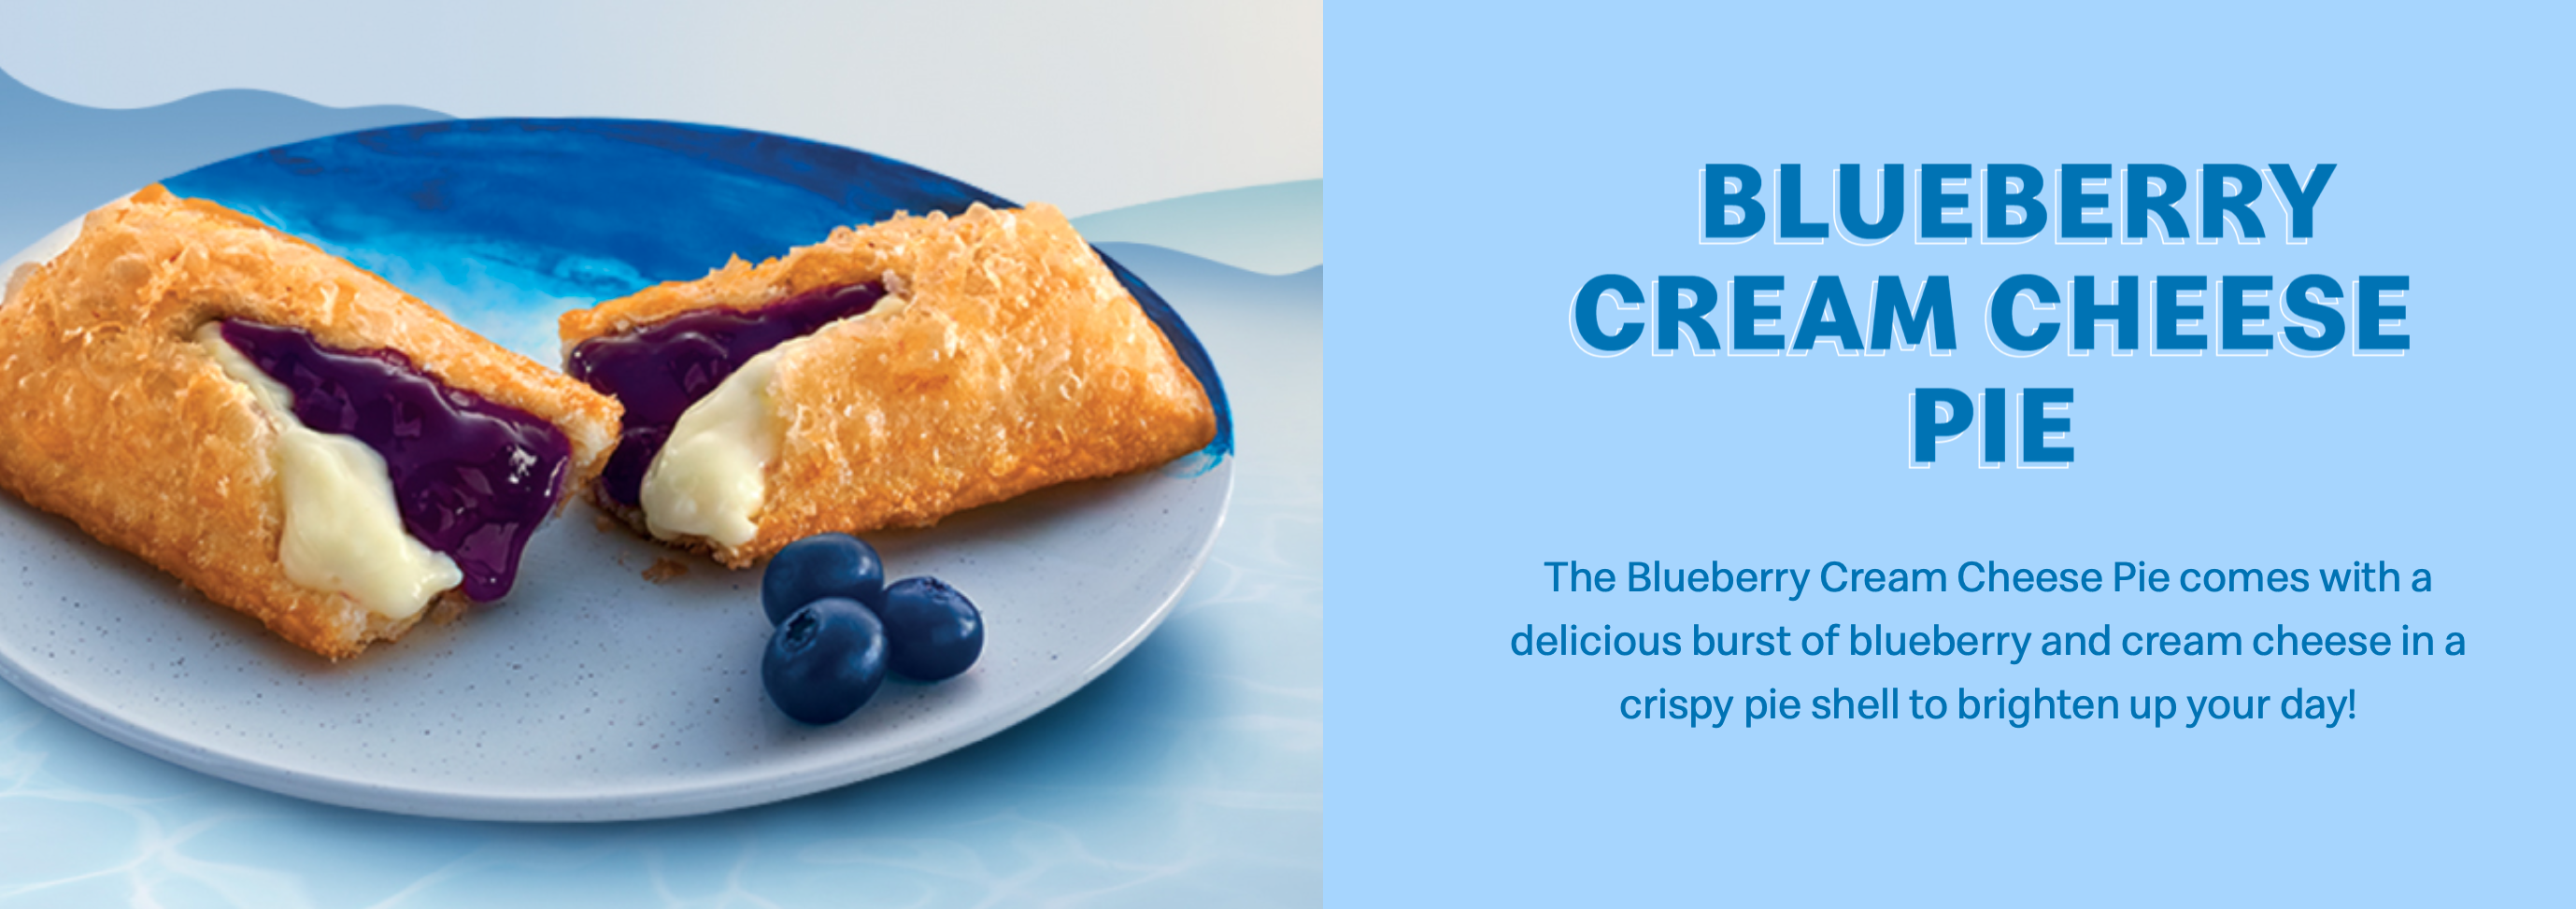 蓝莓奶油奶酪派（Blueberry Cream Cheese Pie）再次强势回归！-图摘自官网-